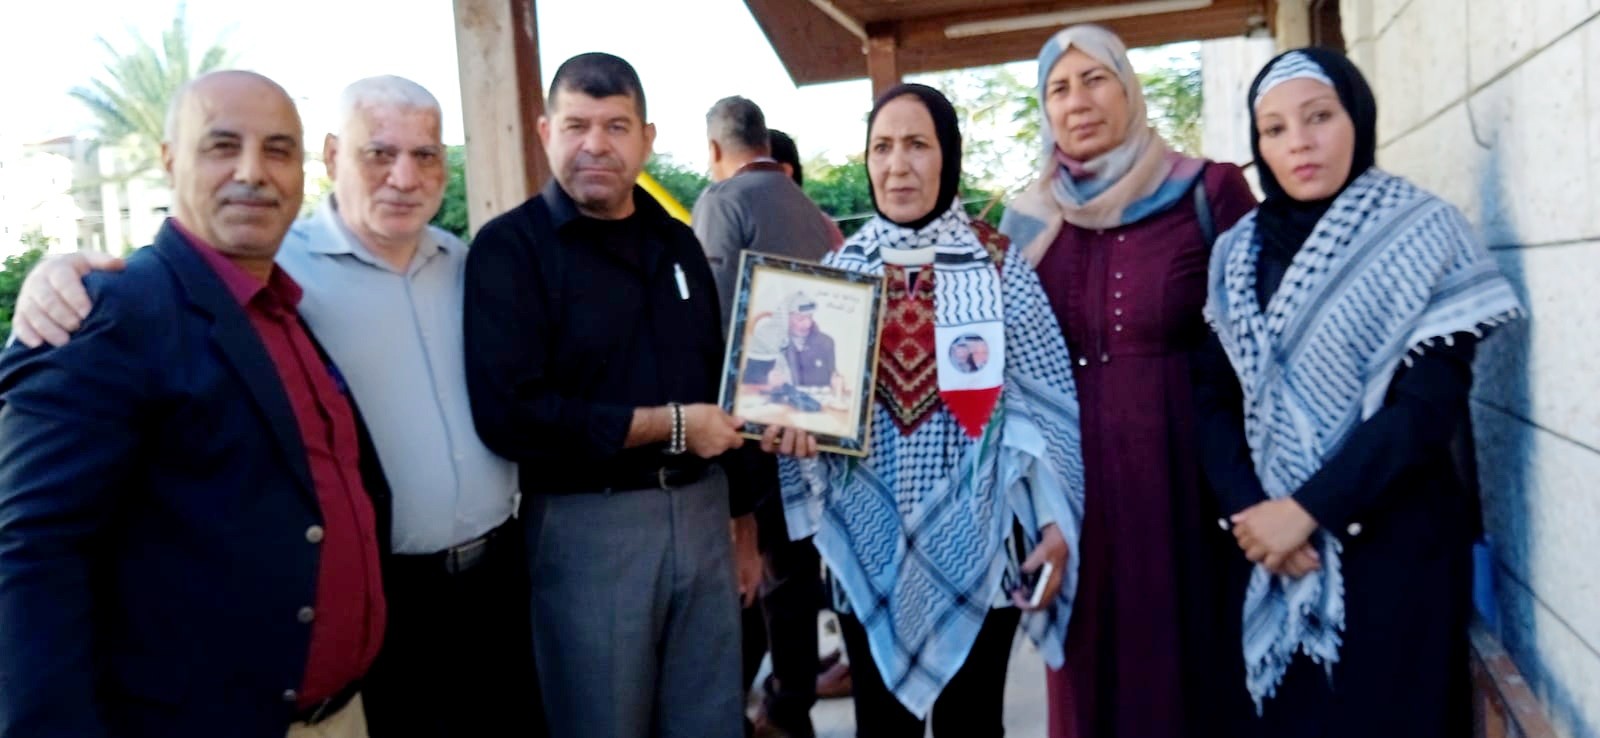 التجمع الفلسطيني للوطن و الشتات يشارك في إحياء ذكرى السنوية لإستشهاد ياسر عرفات أبو عمار  8.jpg